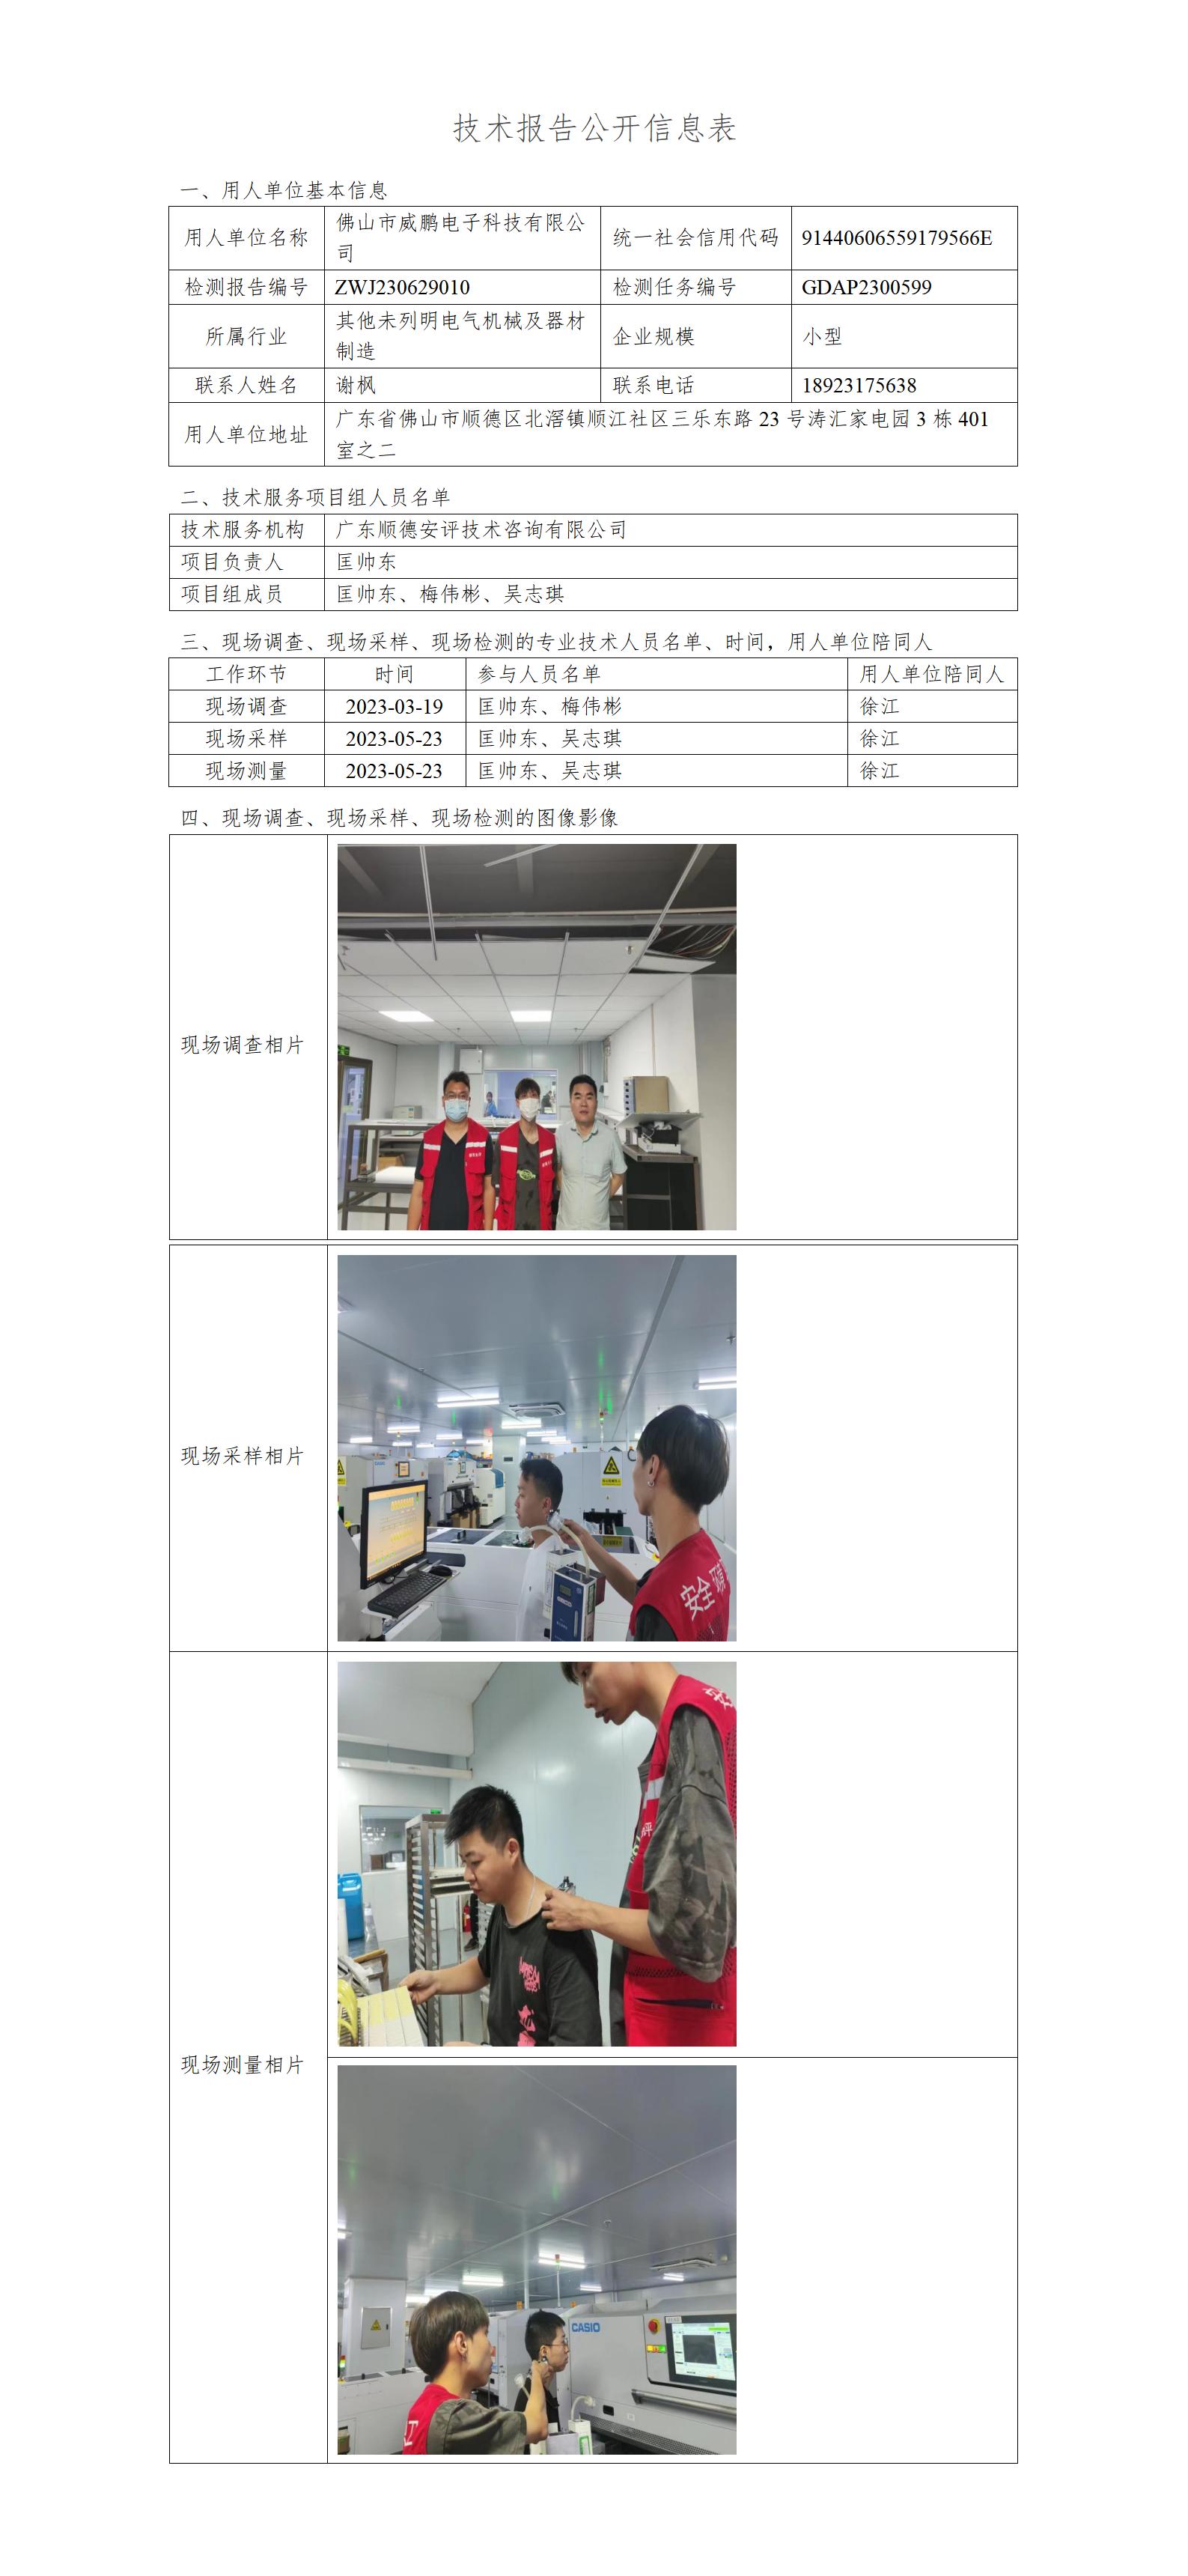 佛山市威鹏电子科技有限公司-2023-技术报告公开信息表_01.jpg